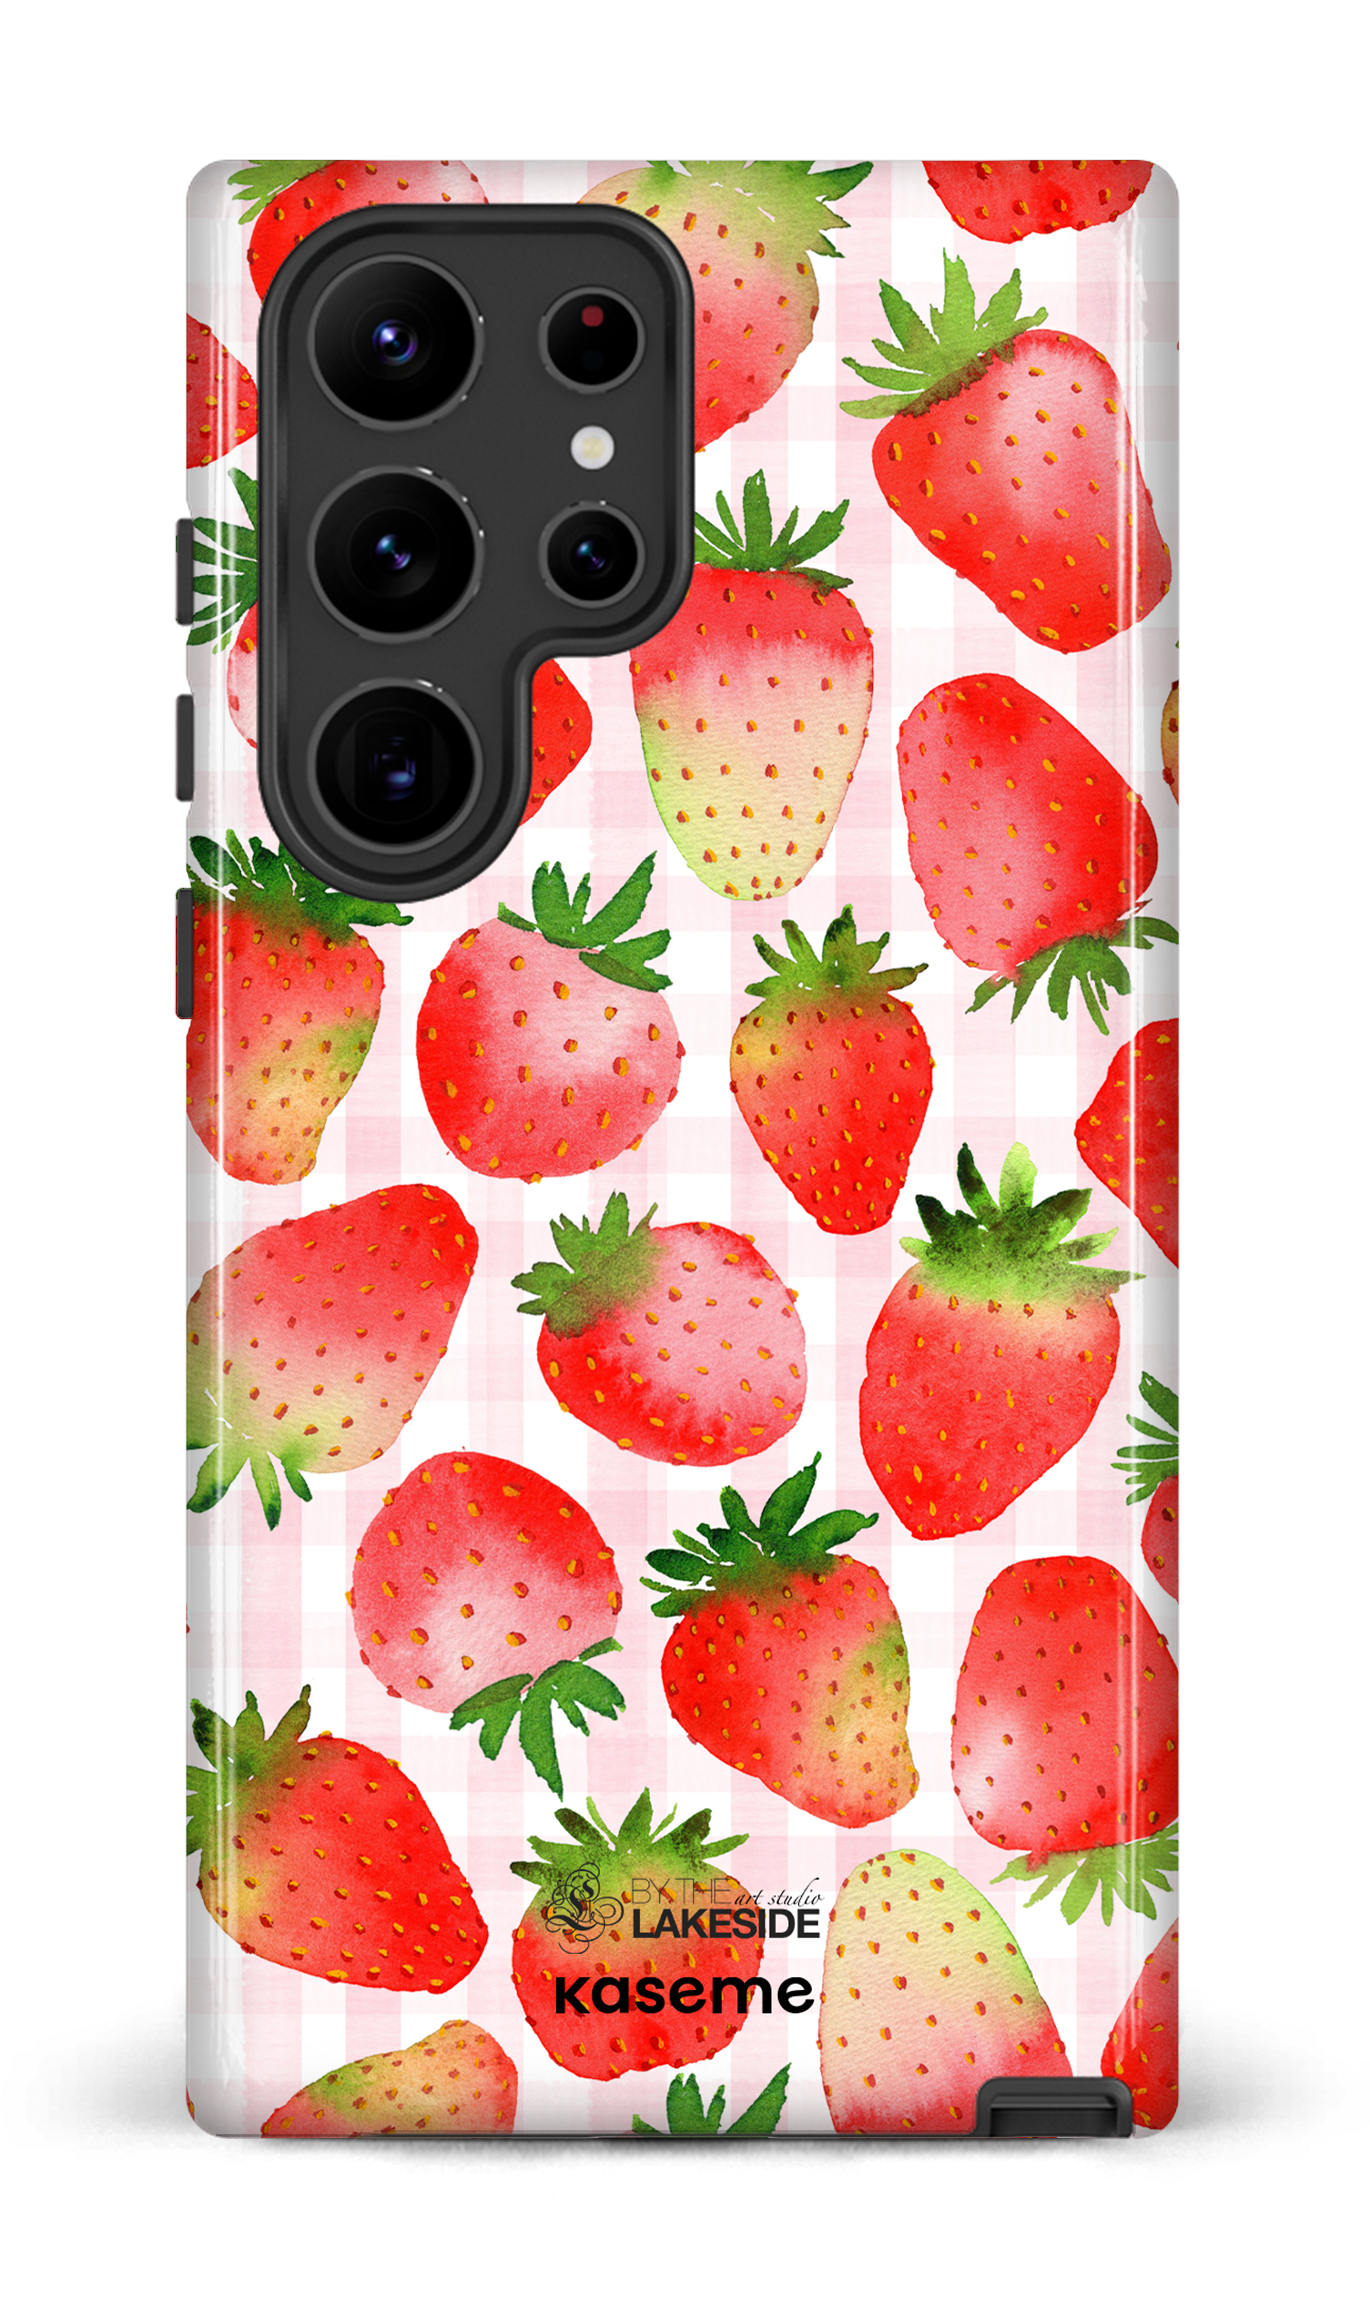 Strawberry Fields by Pooja Umrani - Galaxy S23 Ultra